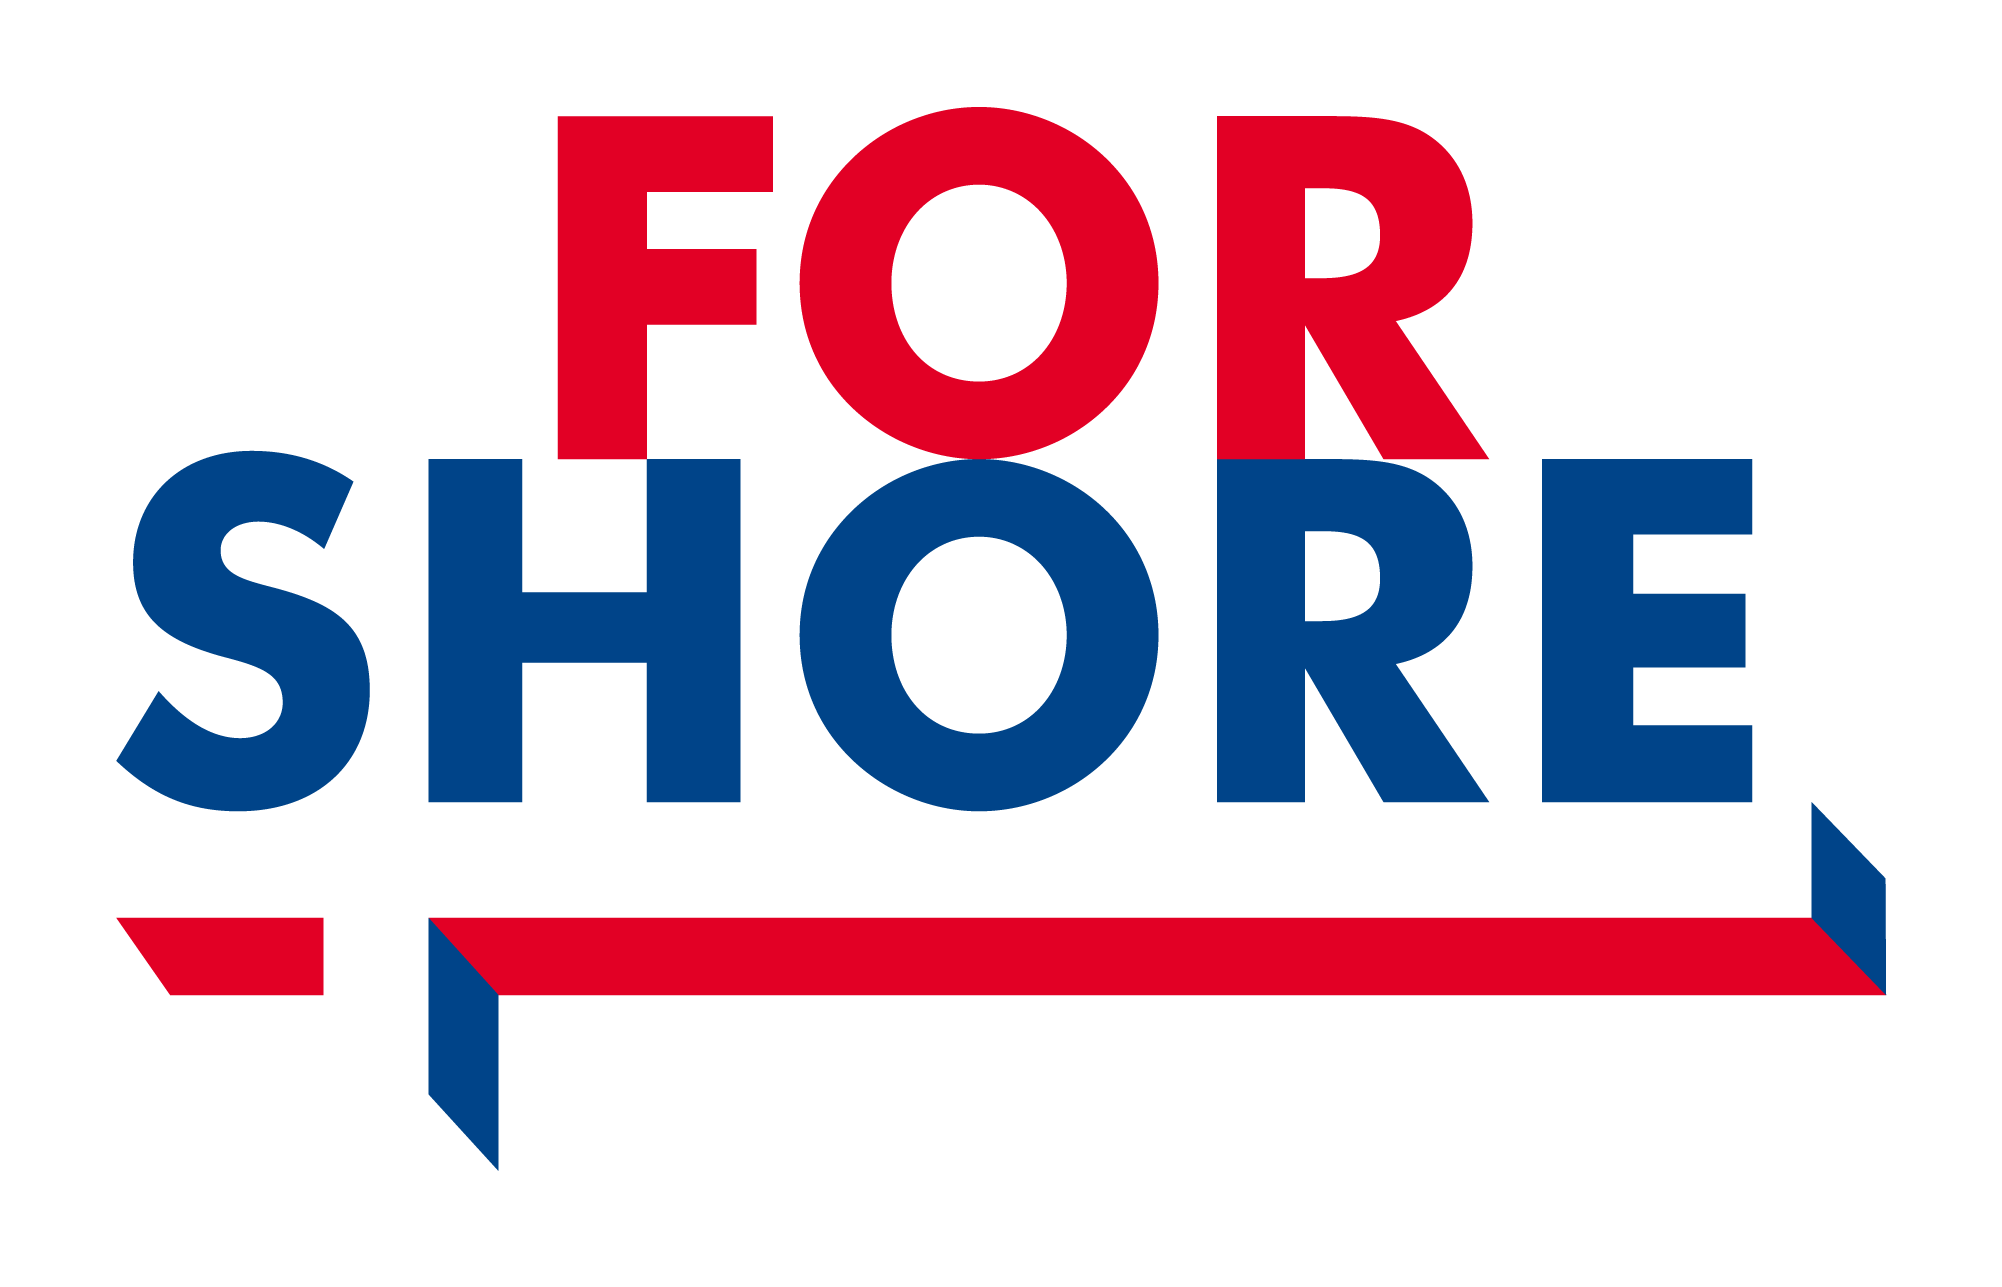 ForShore, nos solutions de fondations spéciales pour vos projets maritimes